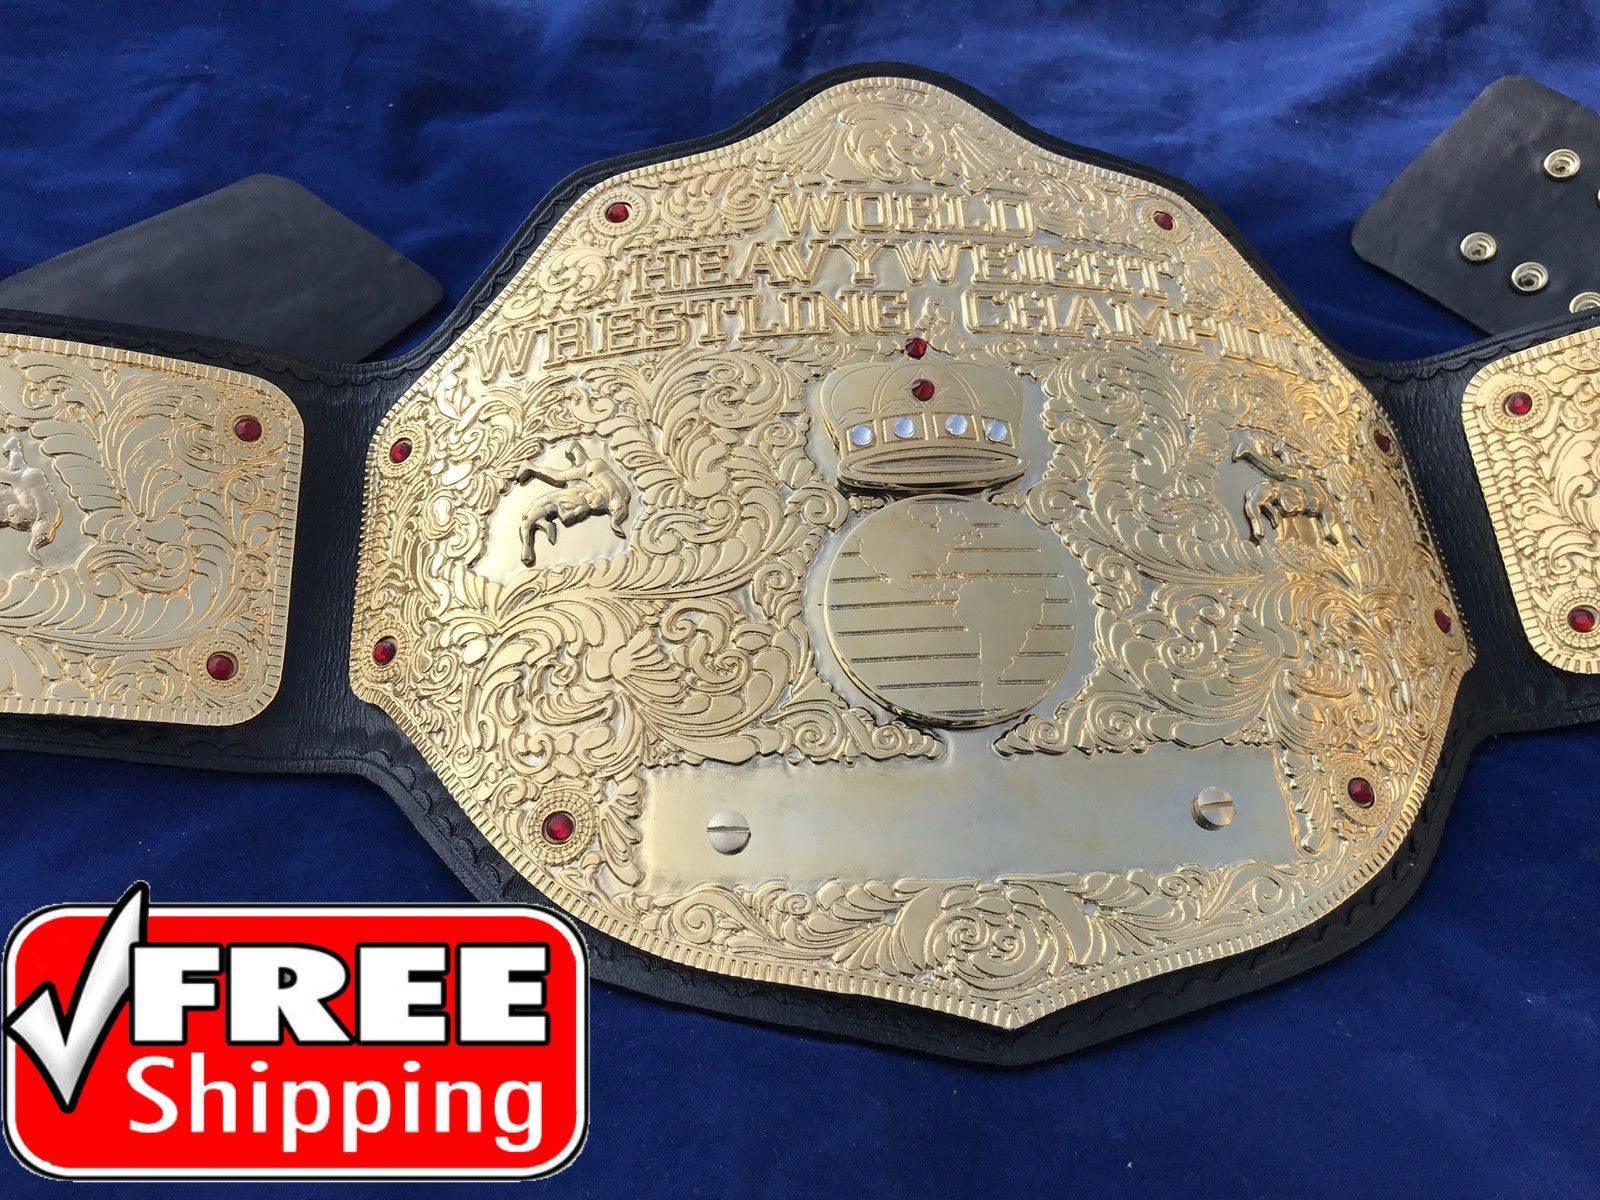 Custom Big Gold Championship Belt - Old School Wwf Wcw WWE Belt